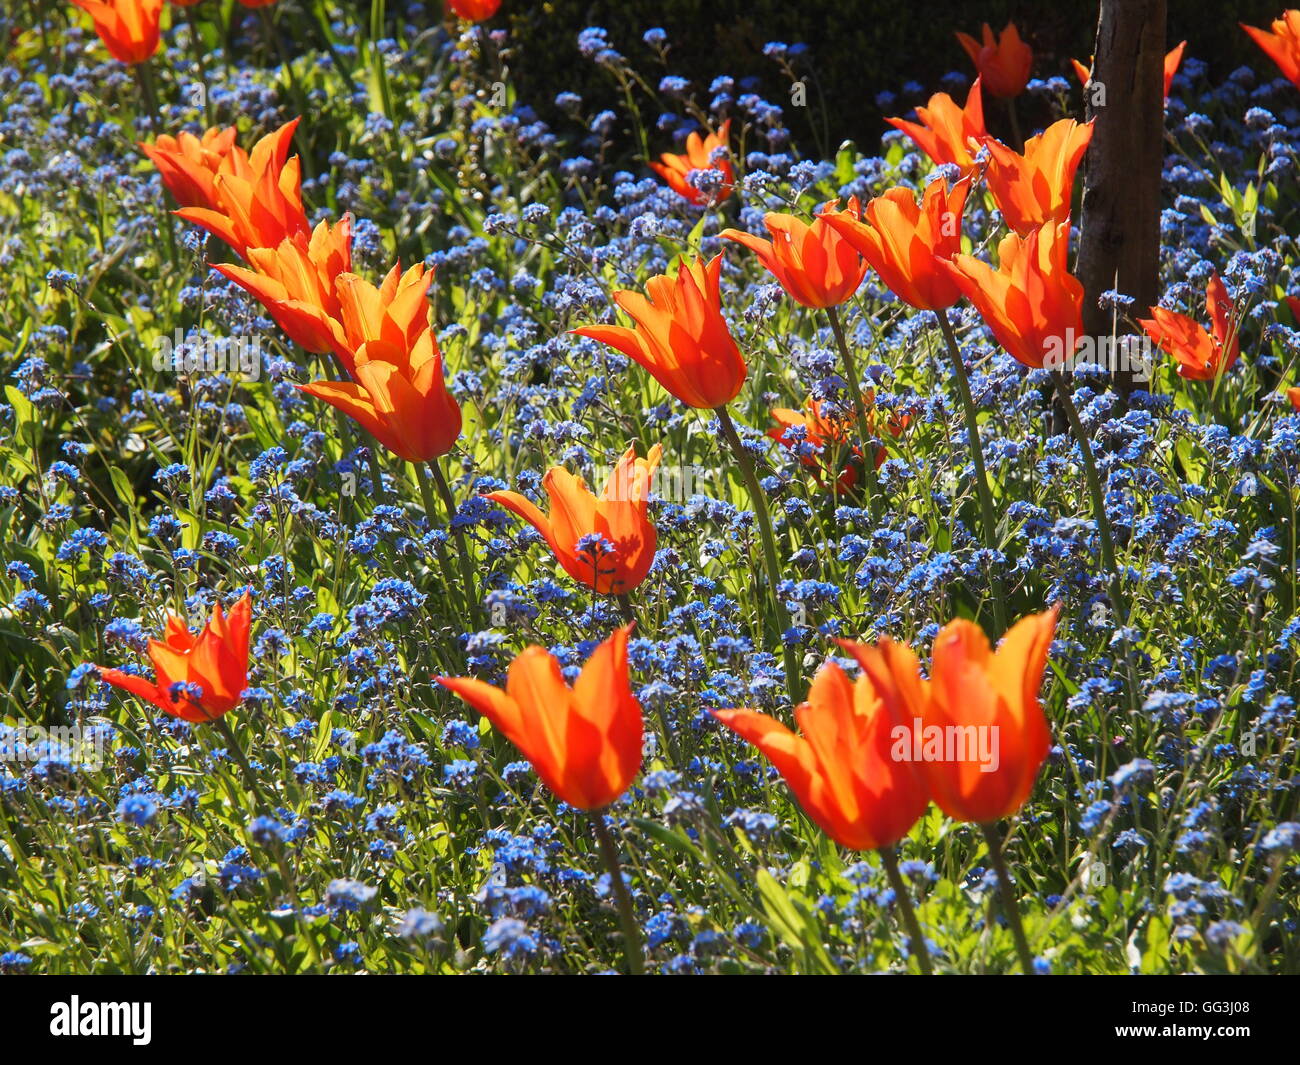 Wunderschön beleuchtete "Ballerina" Tulpen im Chenies Manor in April Sonnenschein. Schöne orange Tulpen und blauen Myosotis. Stockfoto